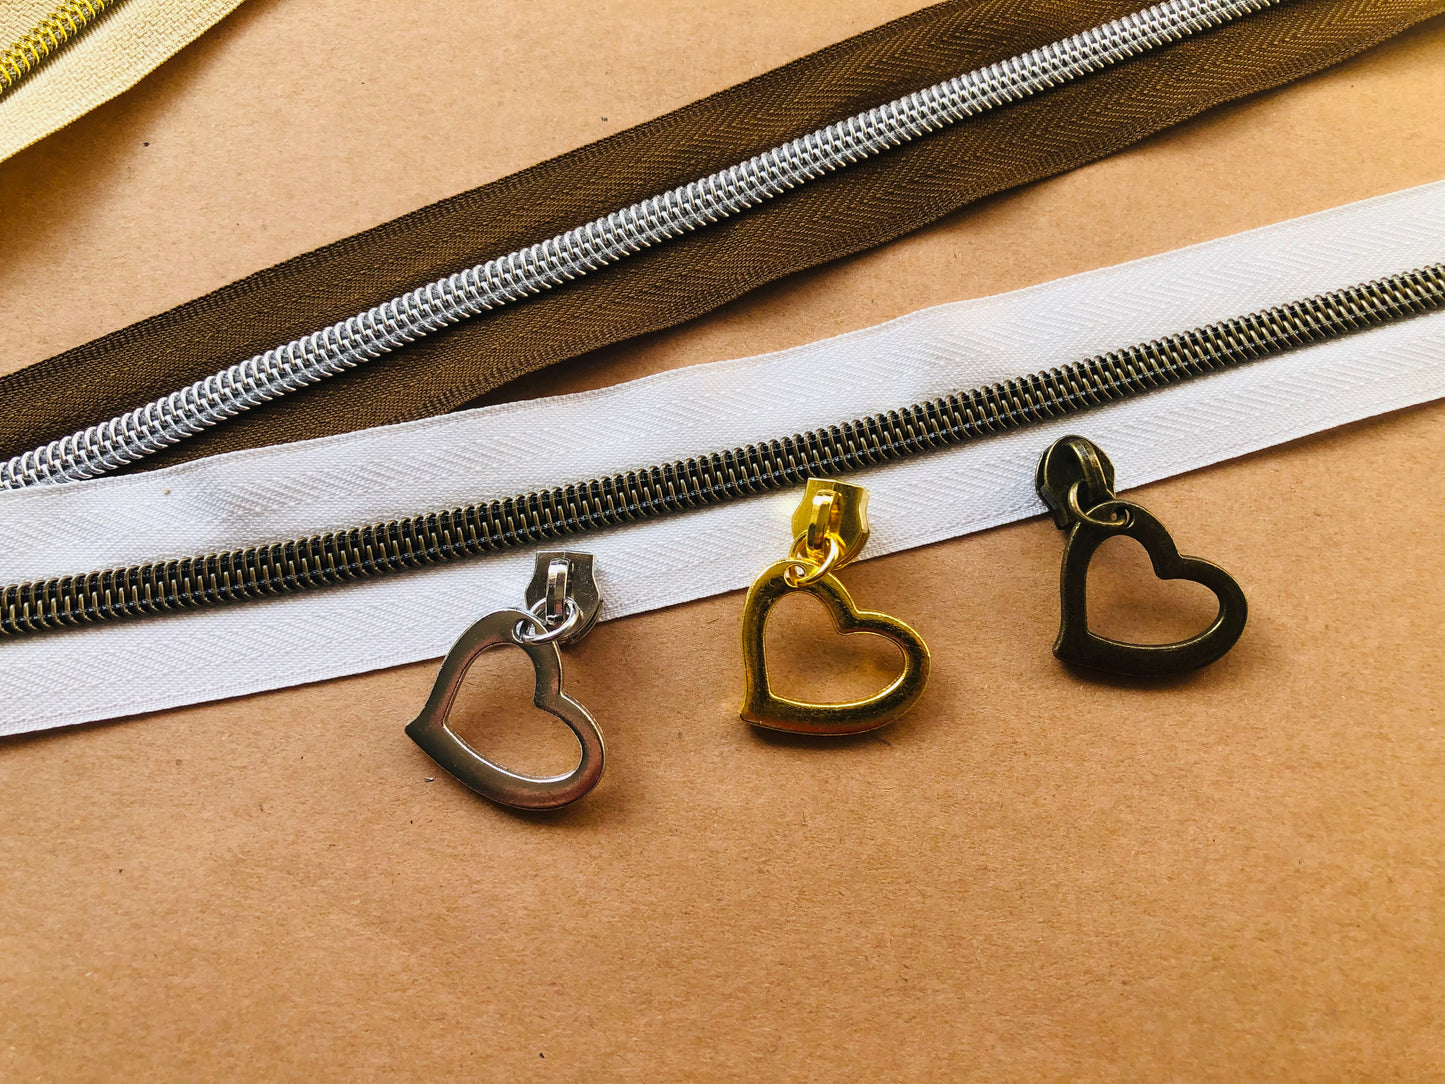 Big heart zipper pulls, Size 5 zipper pulls for nylon zipper tapes, zipper pulls in antique brass, sliver, gold, rose gold, gun metal